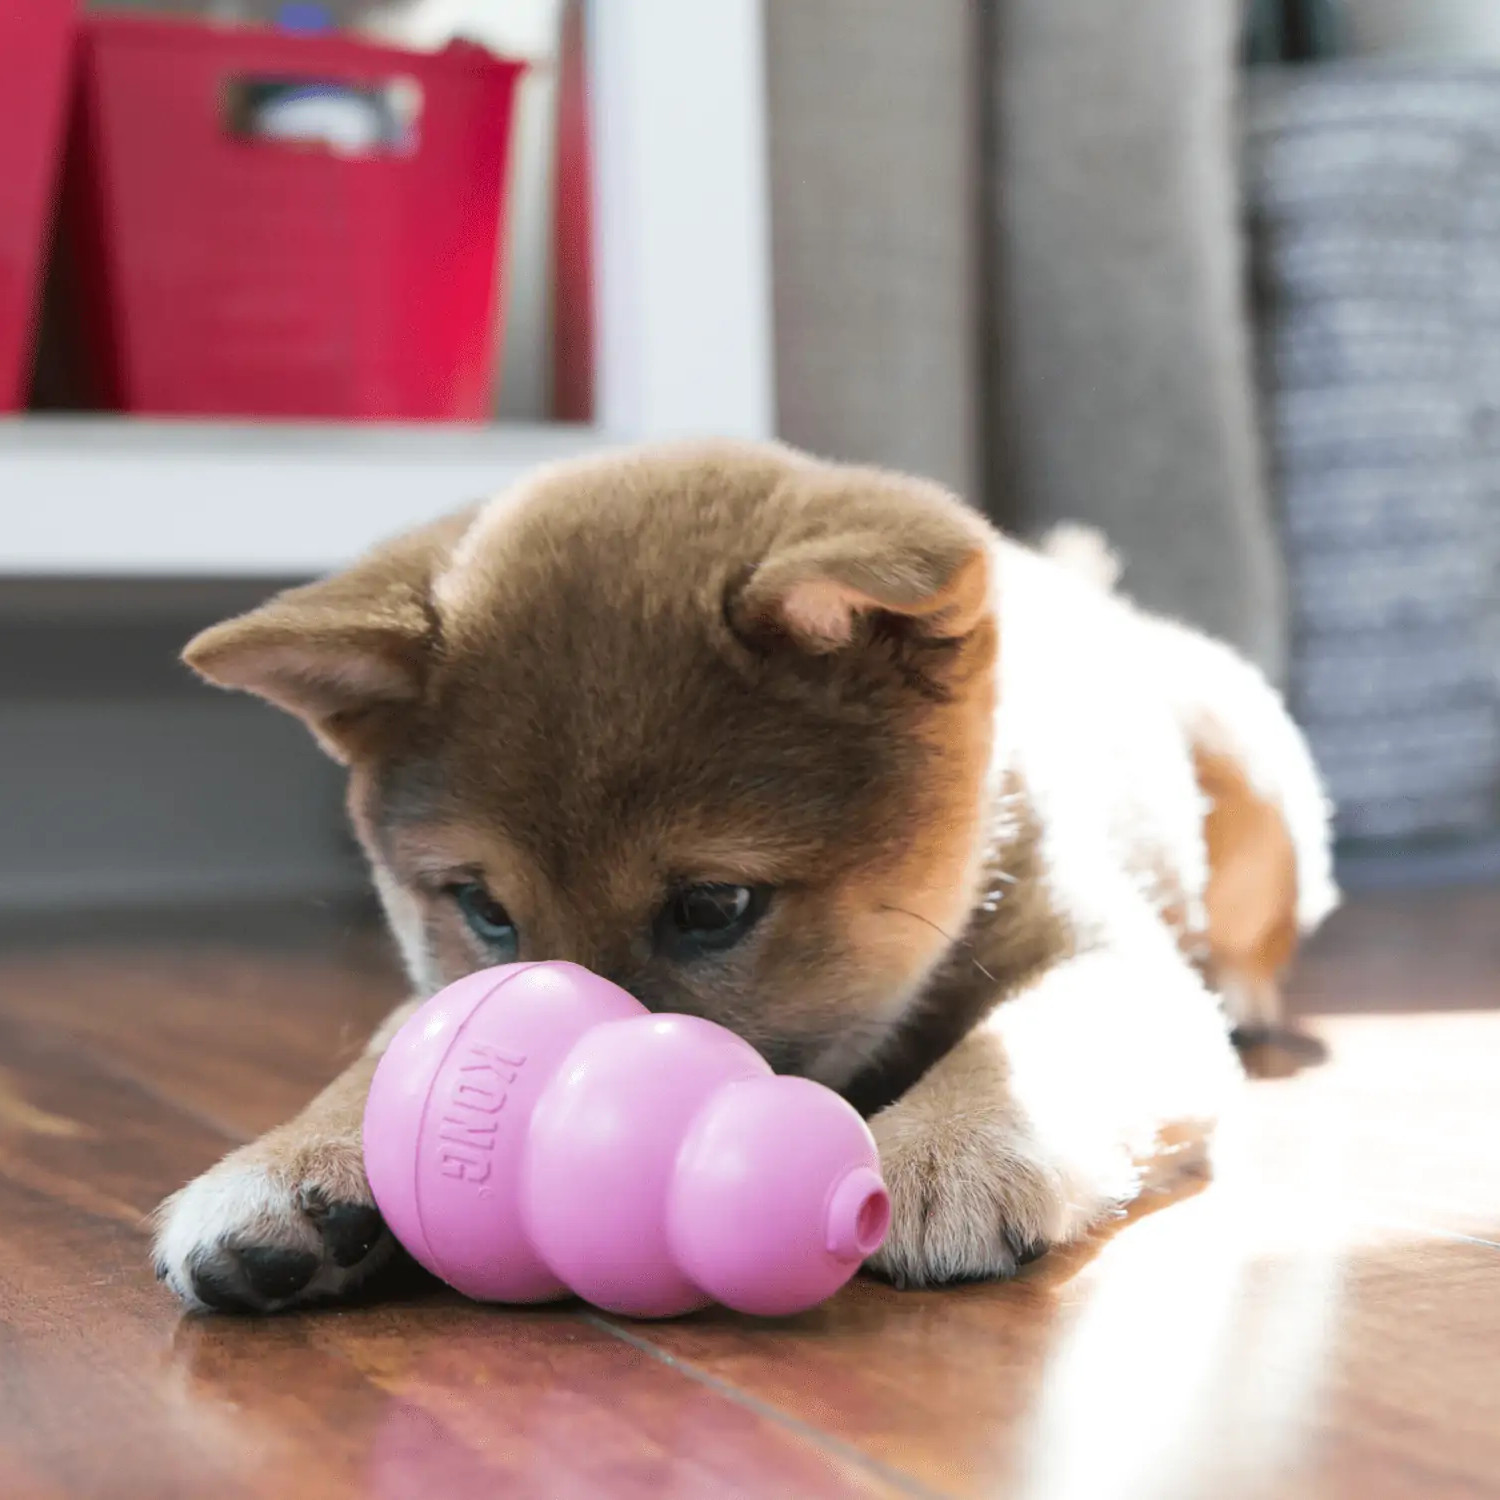 Jeu Kong Puppy pour chiot et petit chiens - Super Croquettes